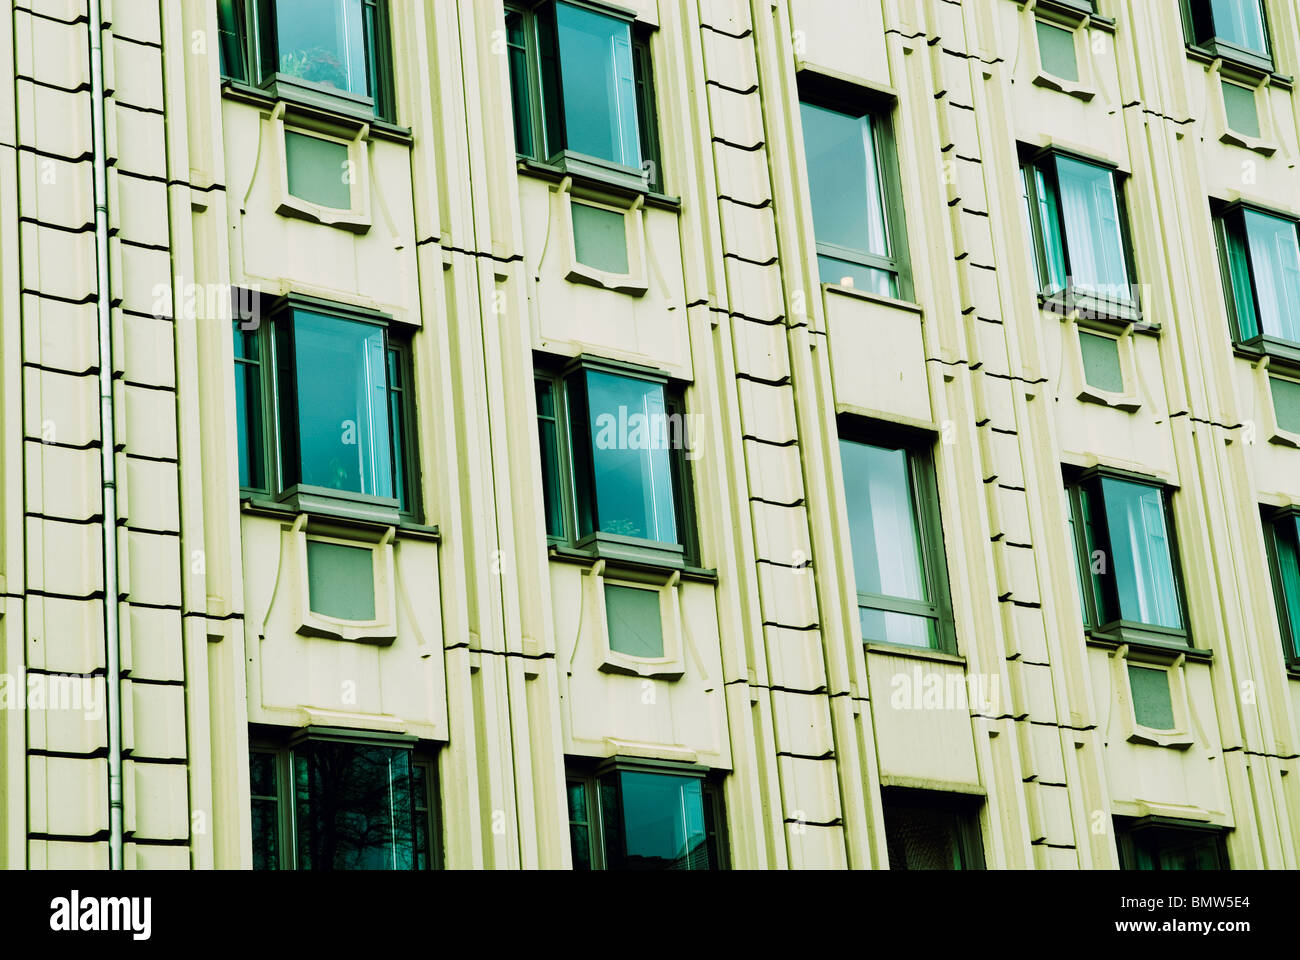 Détail architectural de l'hôtel Sofitel Berlin Allemagne Europe Banque D'Images